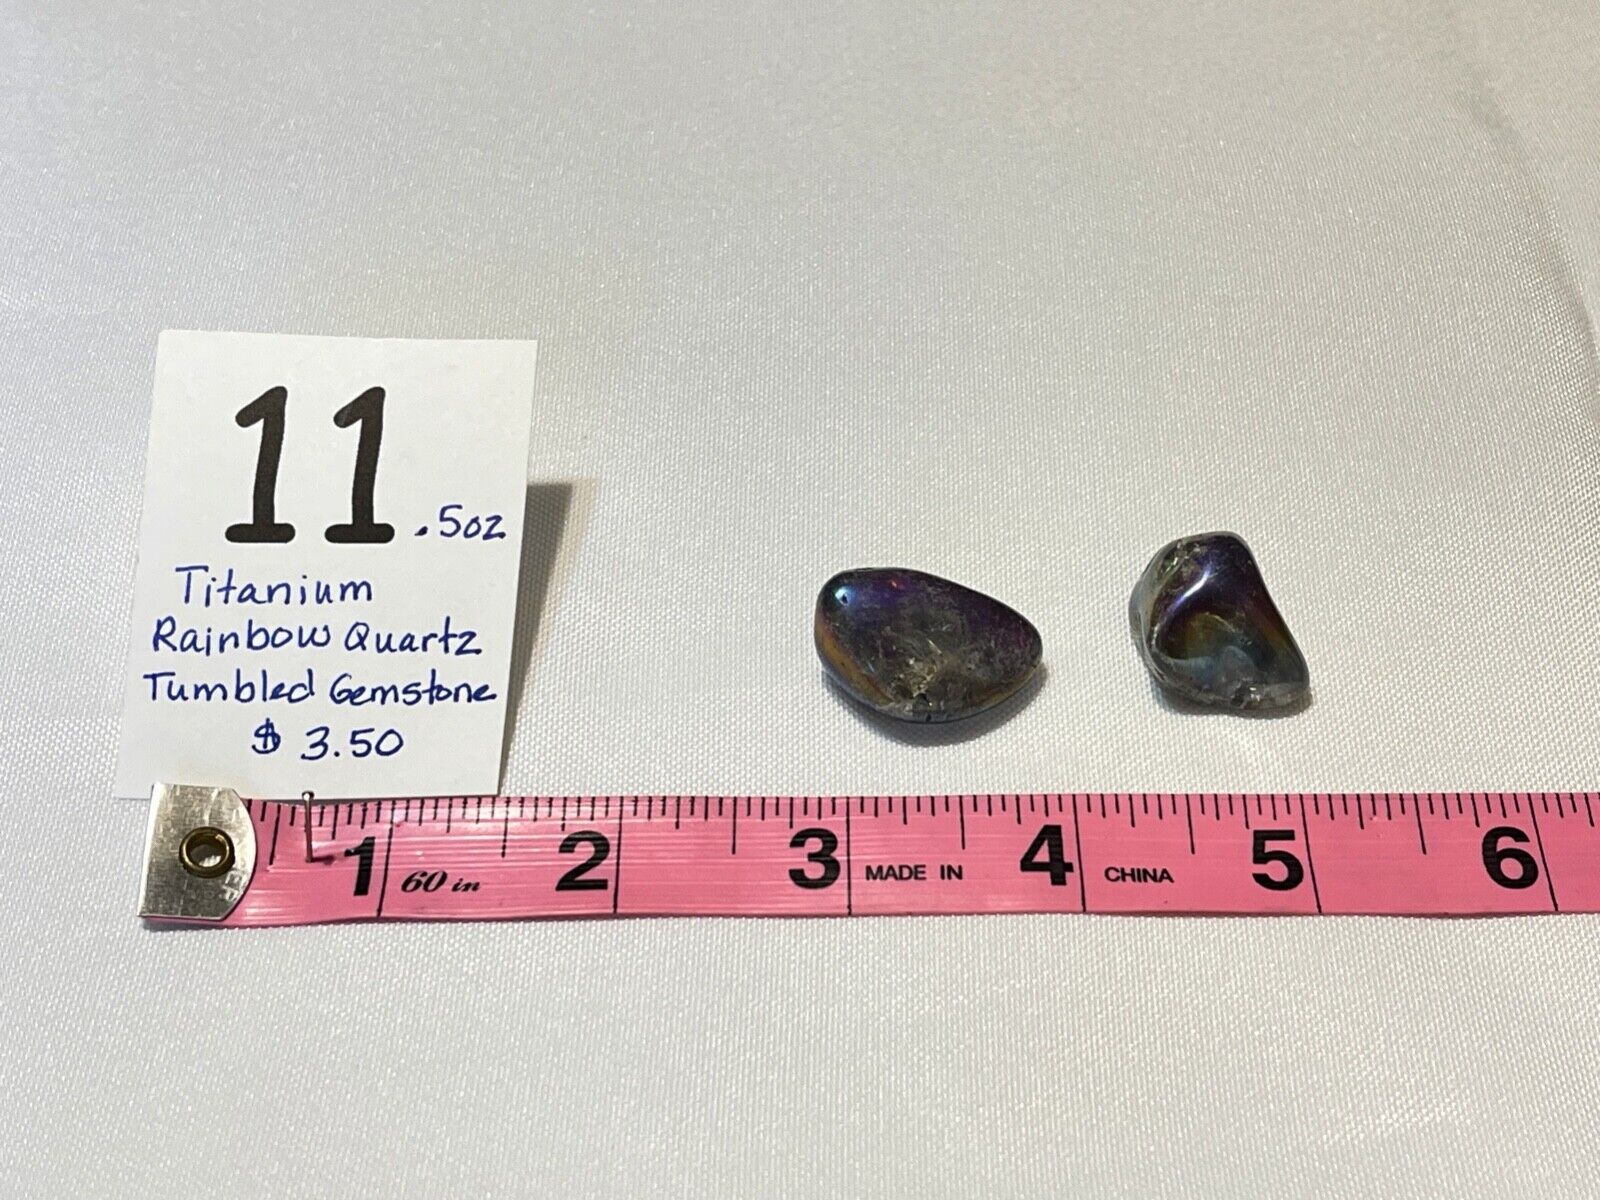 2 Titanium Rainbow Quartz,tumbled gemstone, .5 oz, #11